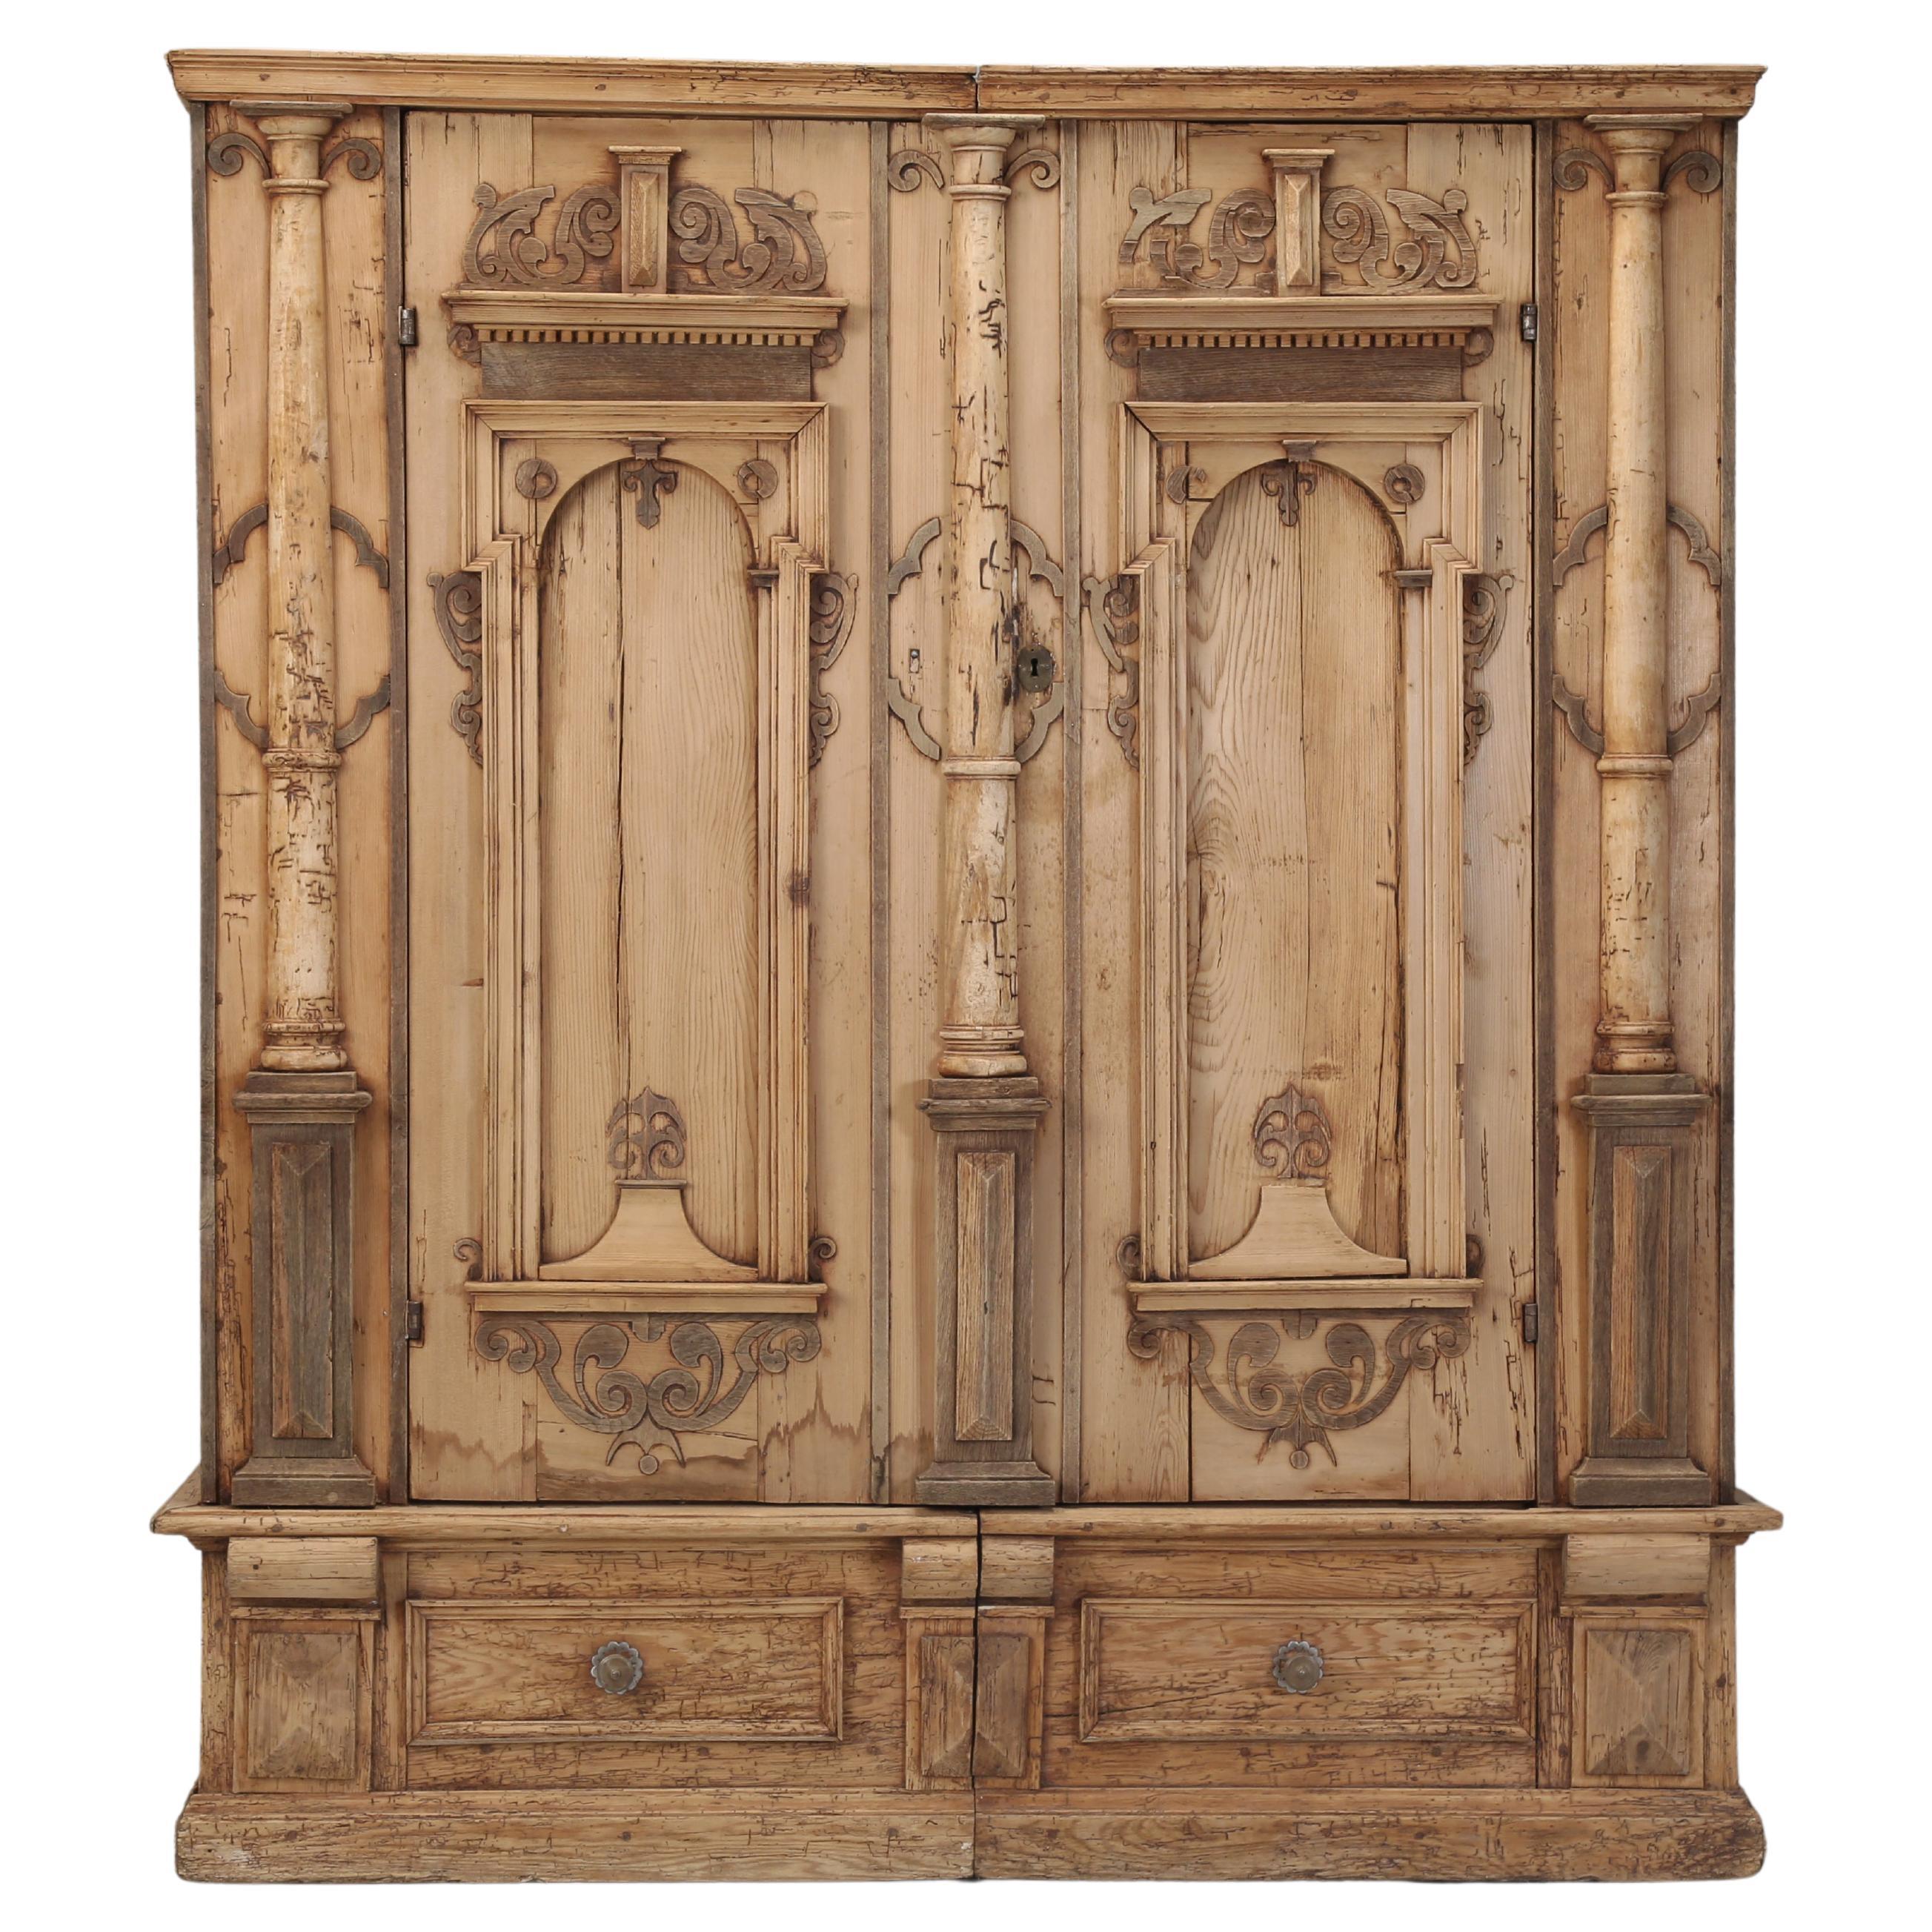 Armoire ou armoire baroque allemande ancienne en pin rayé fabriquée dans les années 1700